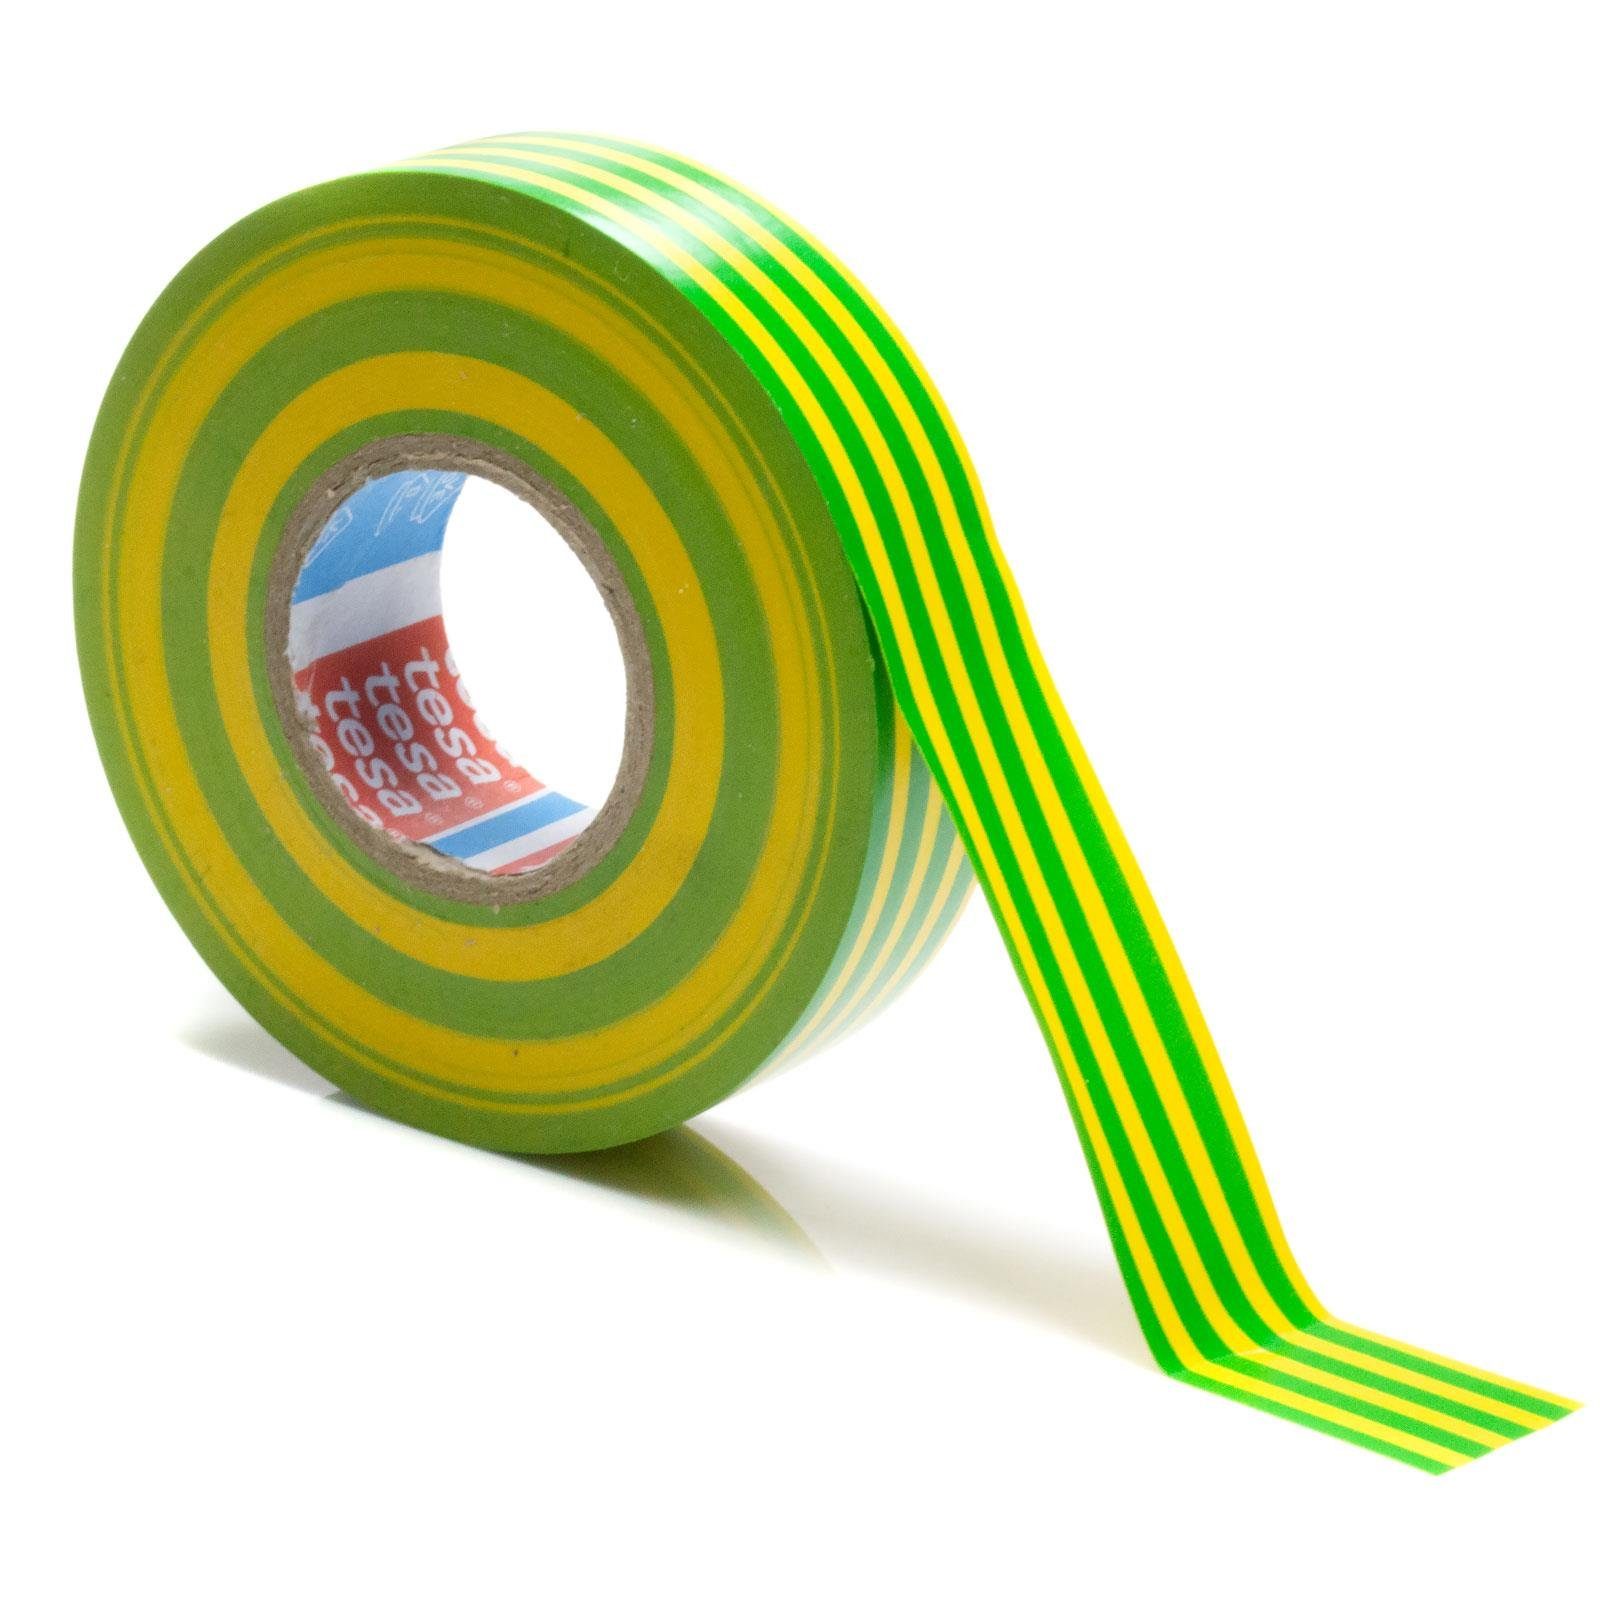 Kabel (1-St) tesaflex 53988 & Elektro tesa grün-gelb PVC Isolierband für Isolierband tesa VDE